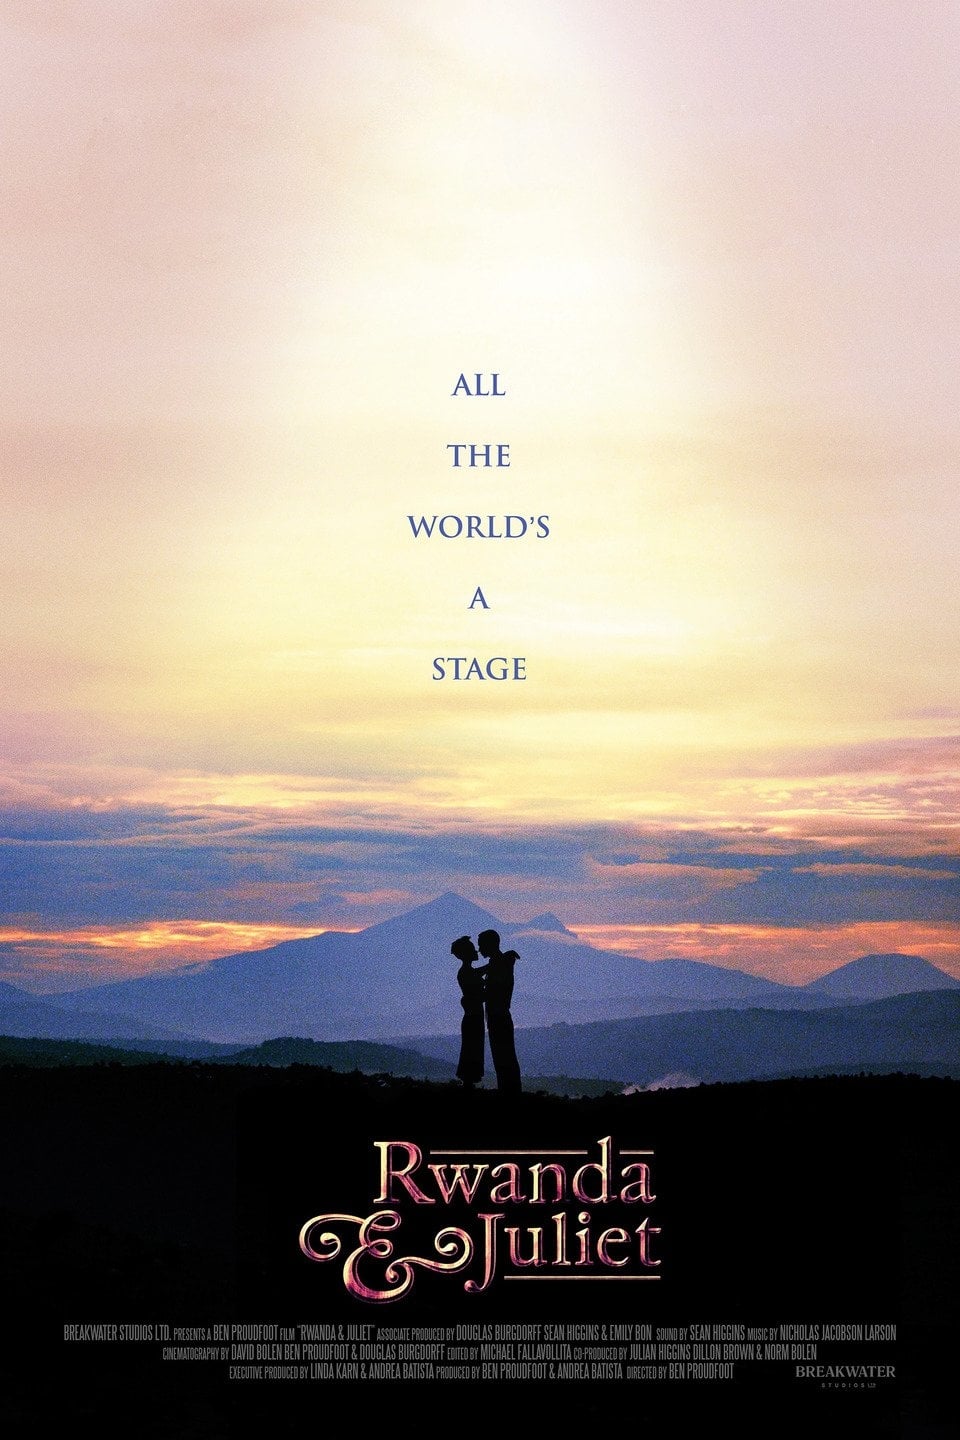 Rwanda & Juliet